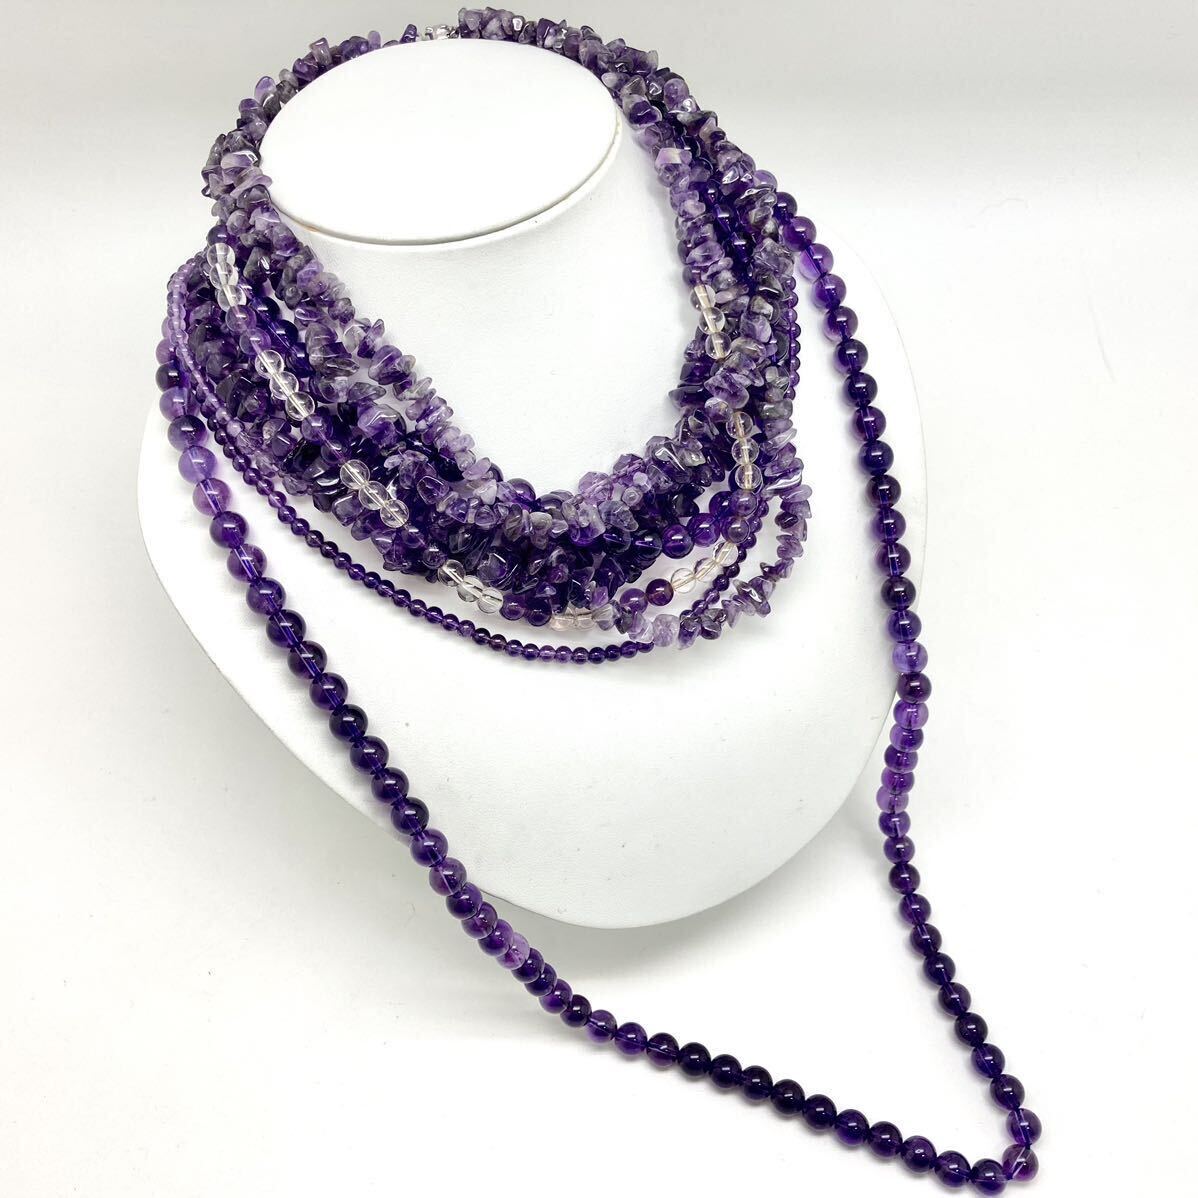 「アメシストネックレス8点おまとめ」a重量約338g アメジスト amethyst 紫水晶 necklace accessory jewelry ジュエリー silver CE0の画像1